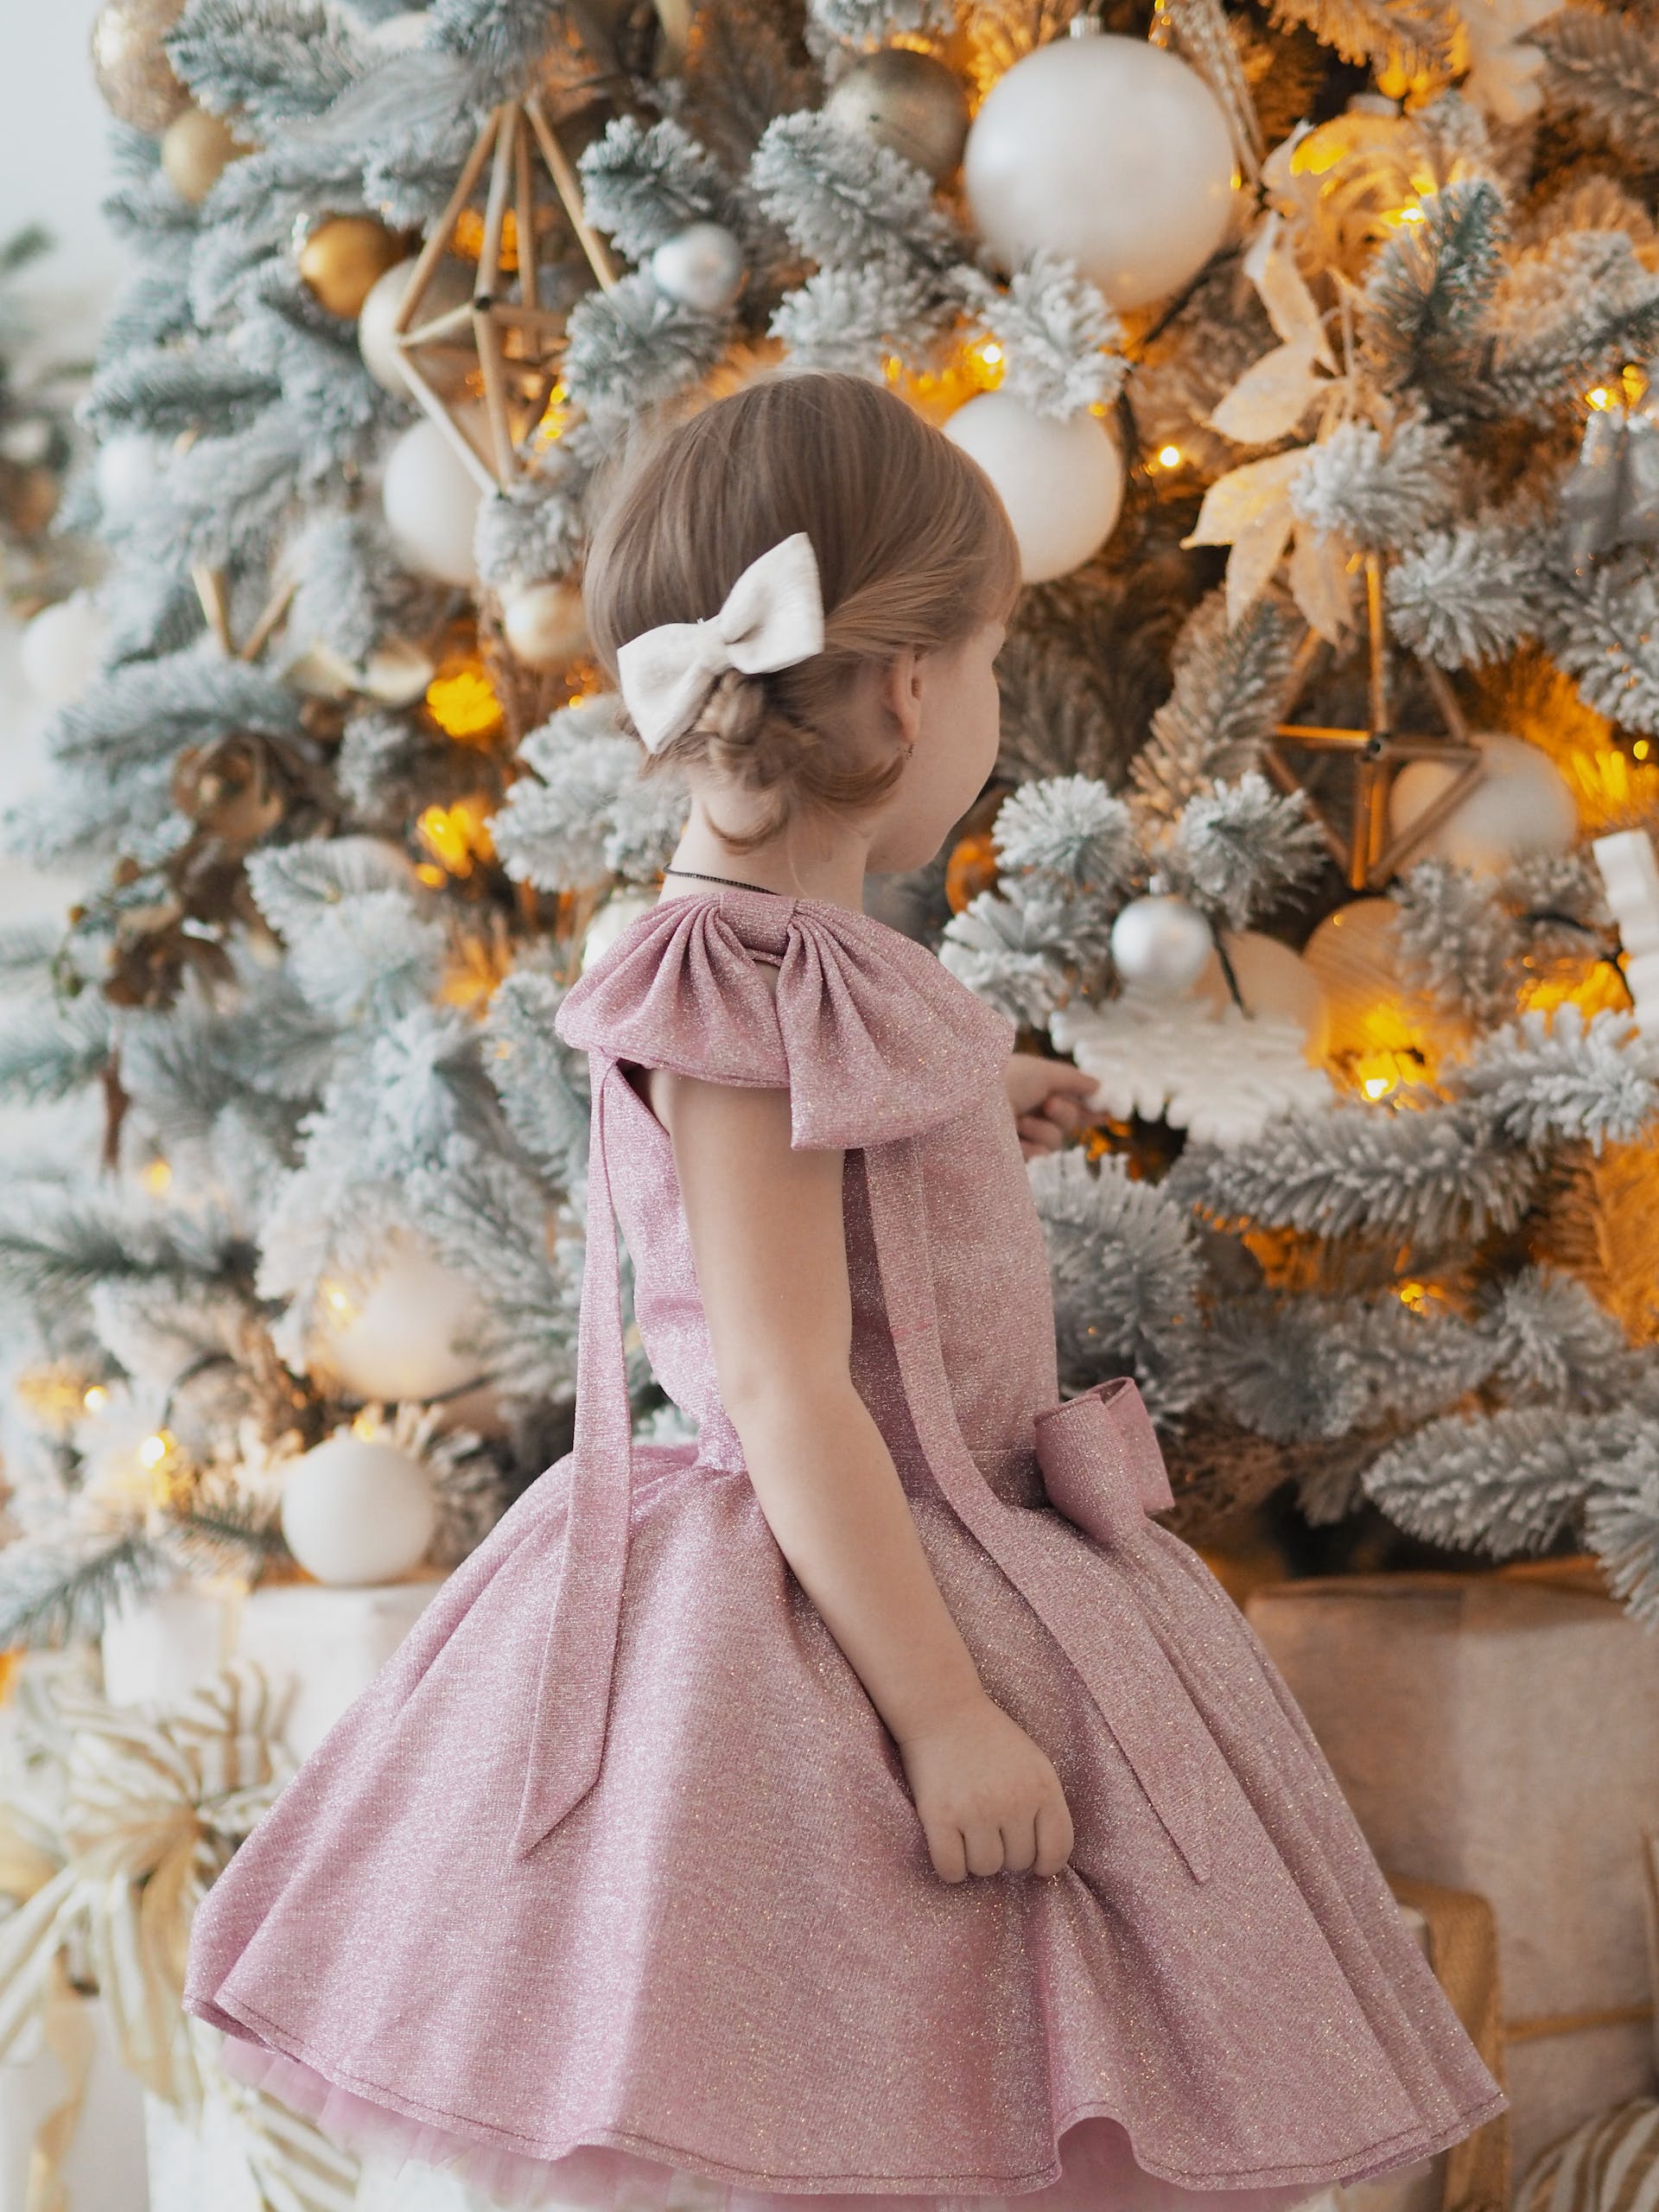 Ein kleines Mädchen schaut sich einen Weihnachtsbaum an | Quelle: Pexels